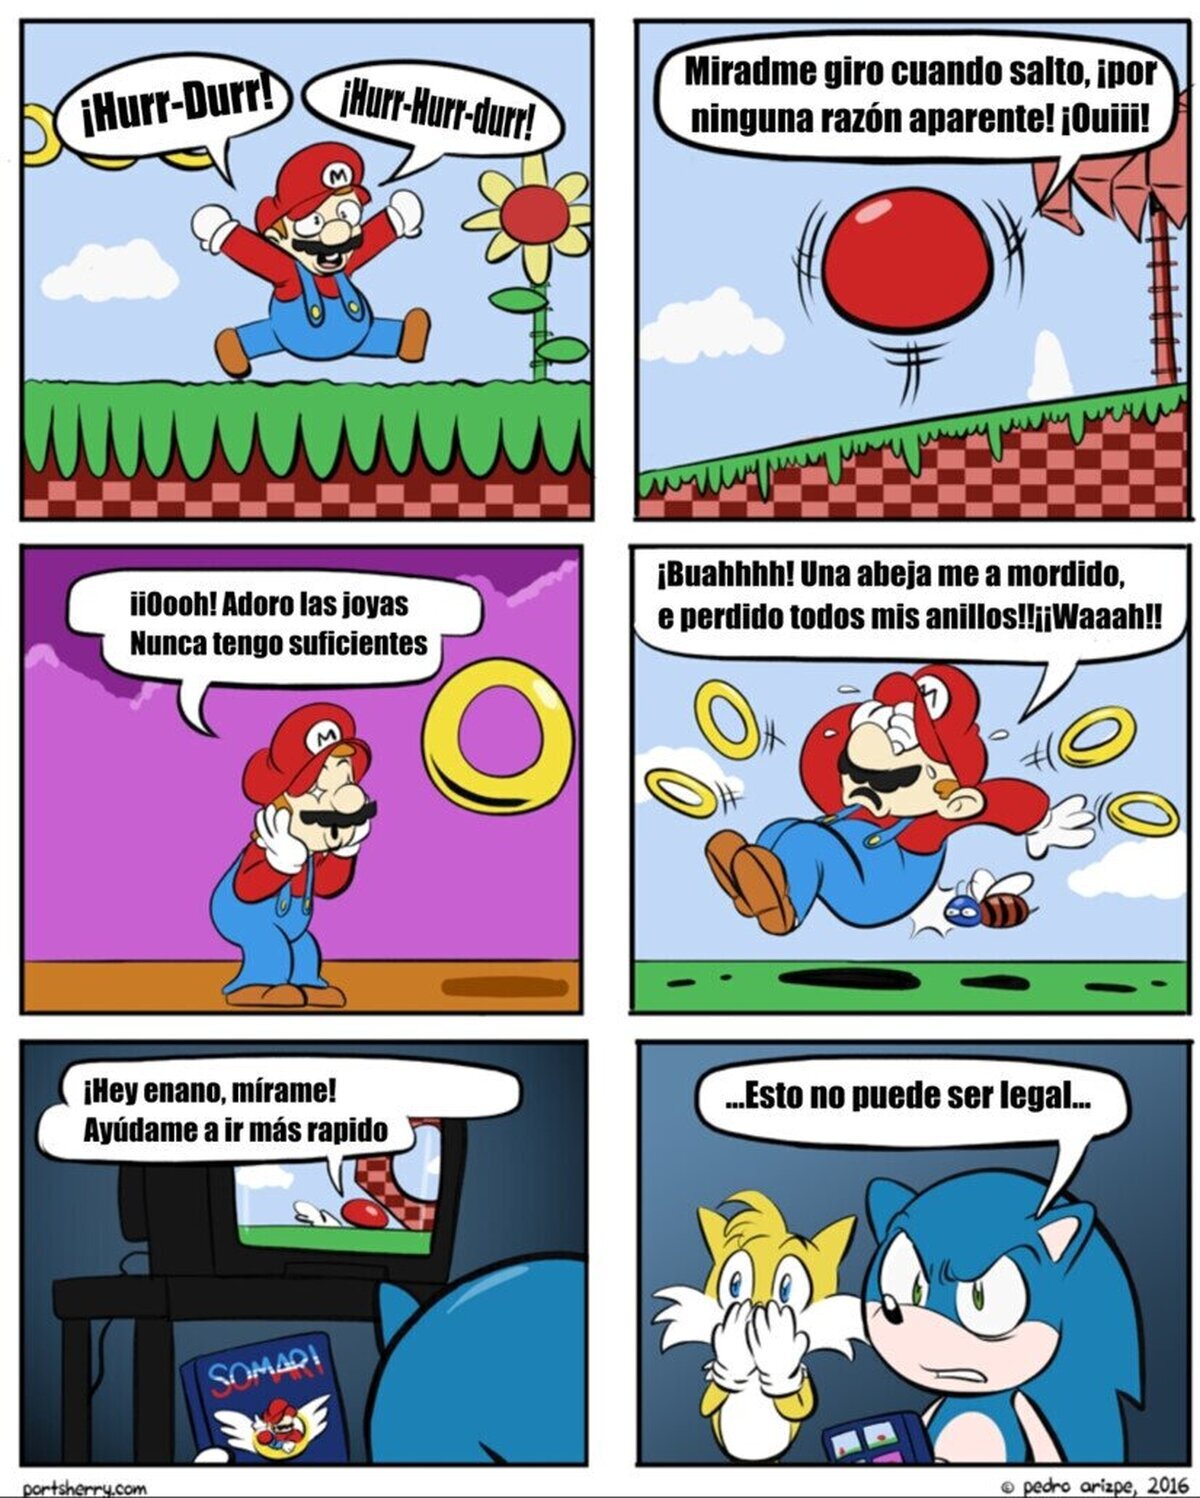 El primer crossover entre Mario y sonic no le hizo mucha gracia a Sonic. Por Pedro arizpe